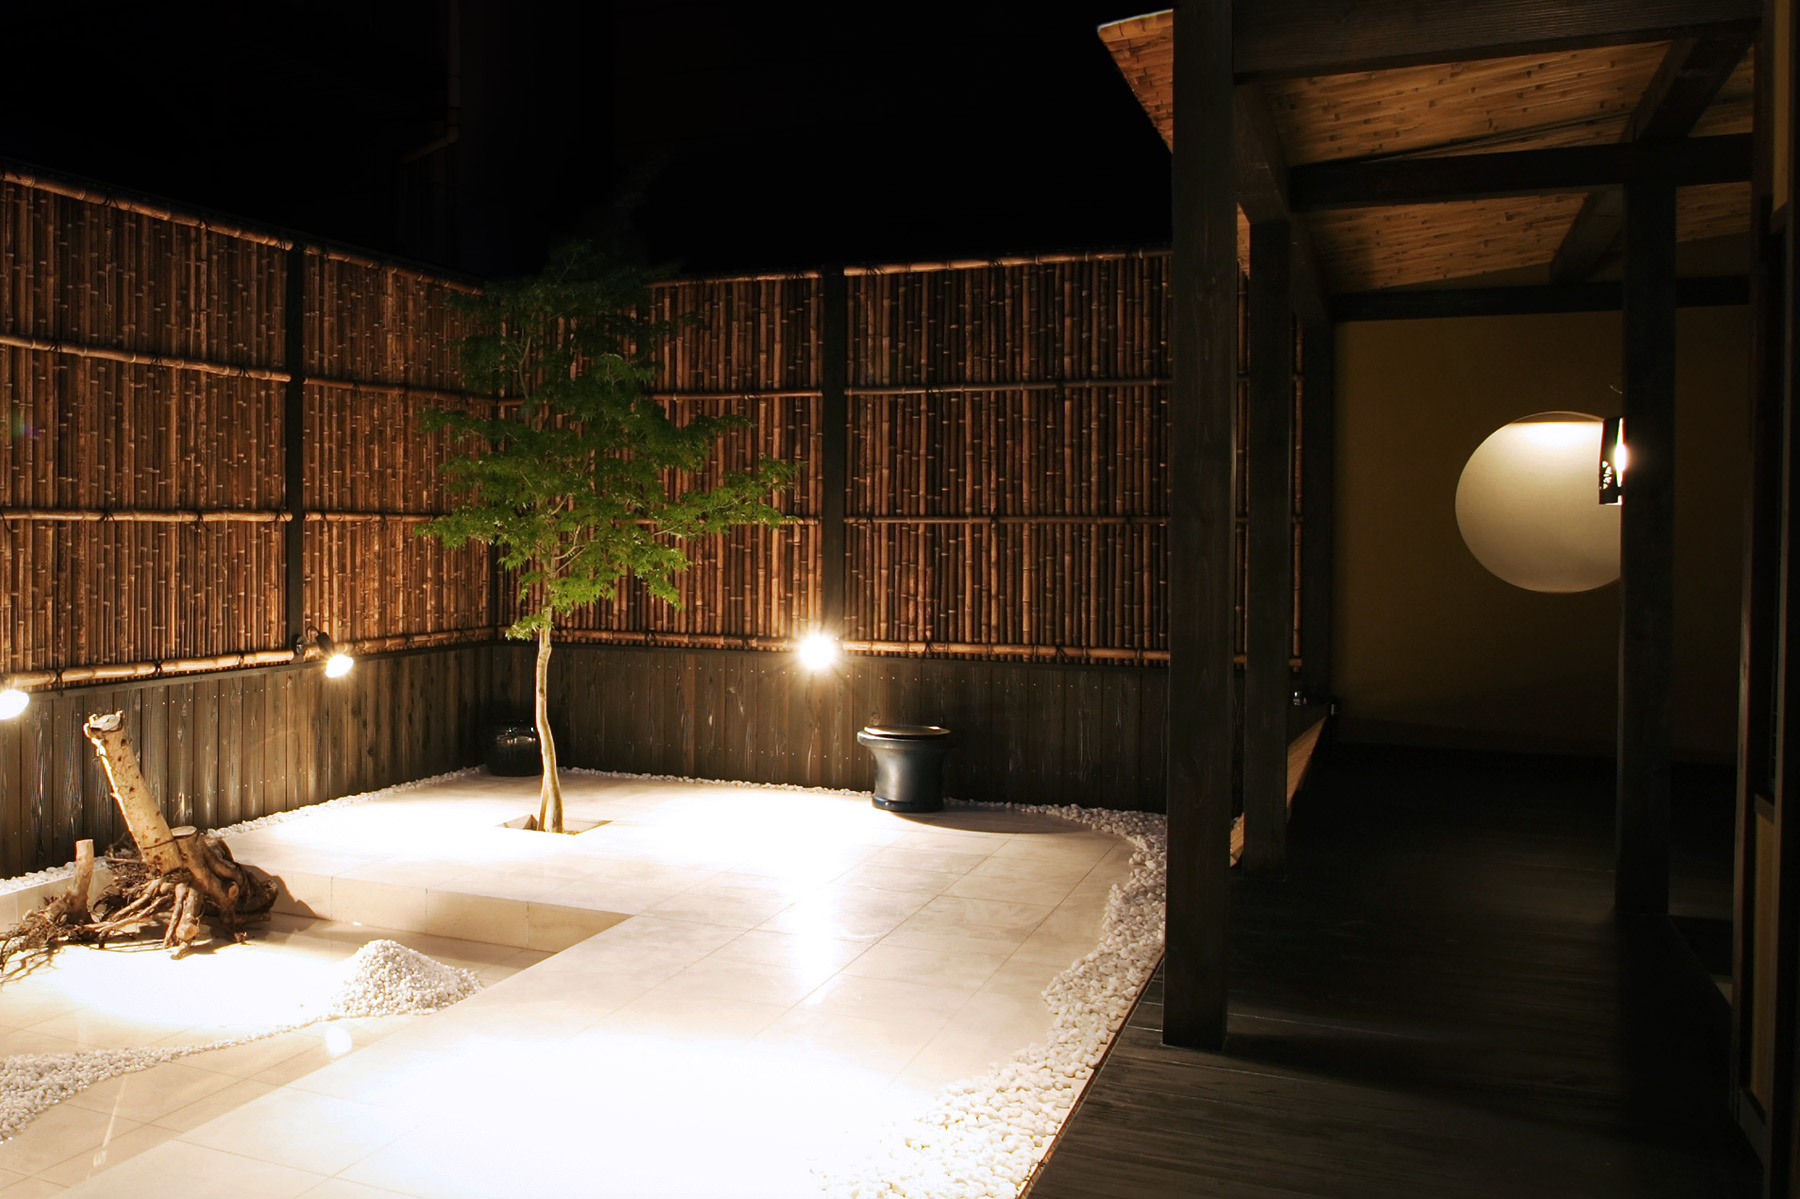 京町家の印象を大切にした中庭。土間部分をタイルで仕上げることで、モダンな印象も併せ持つデザインに。